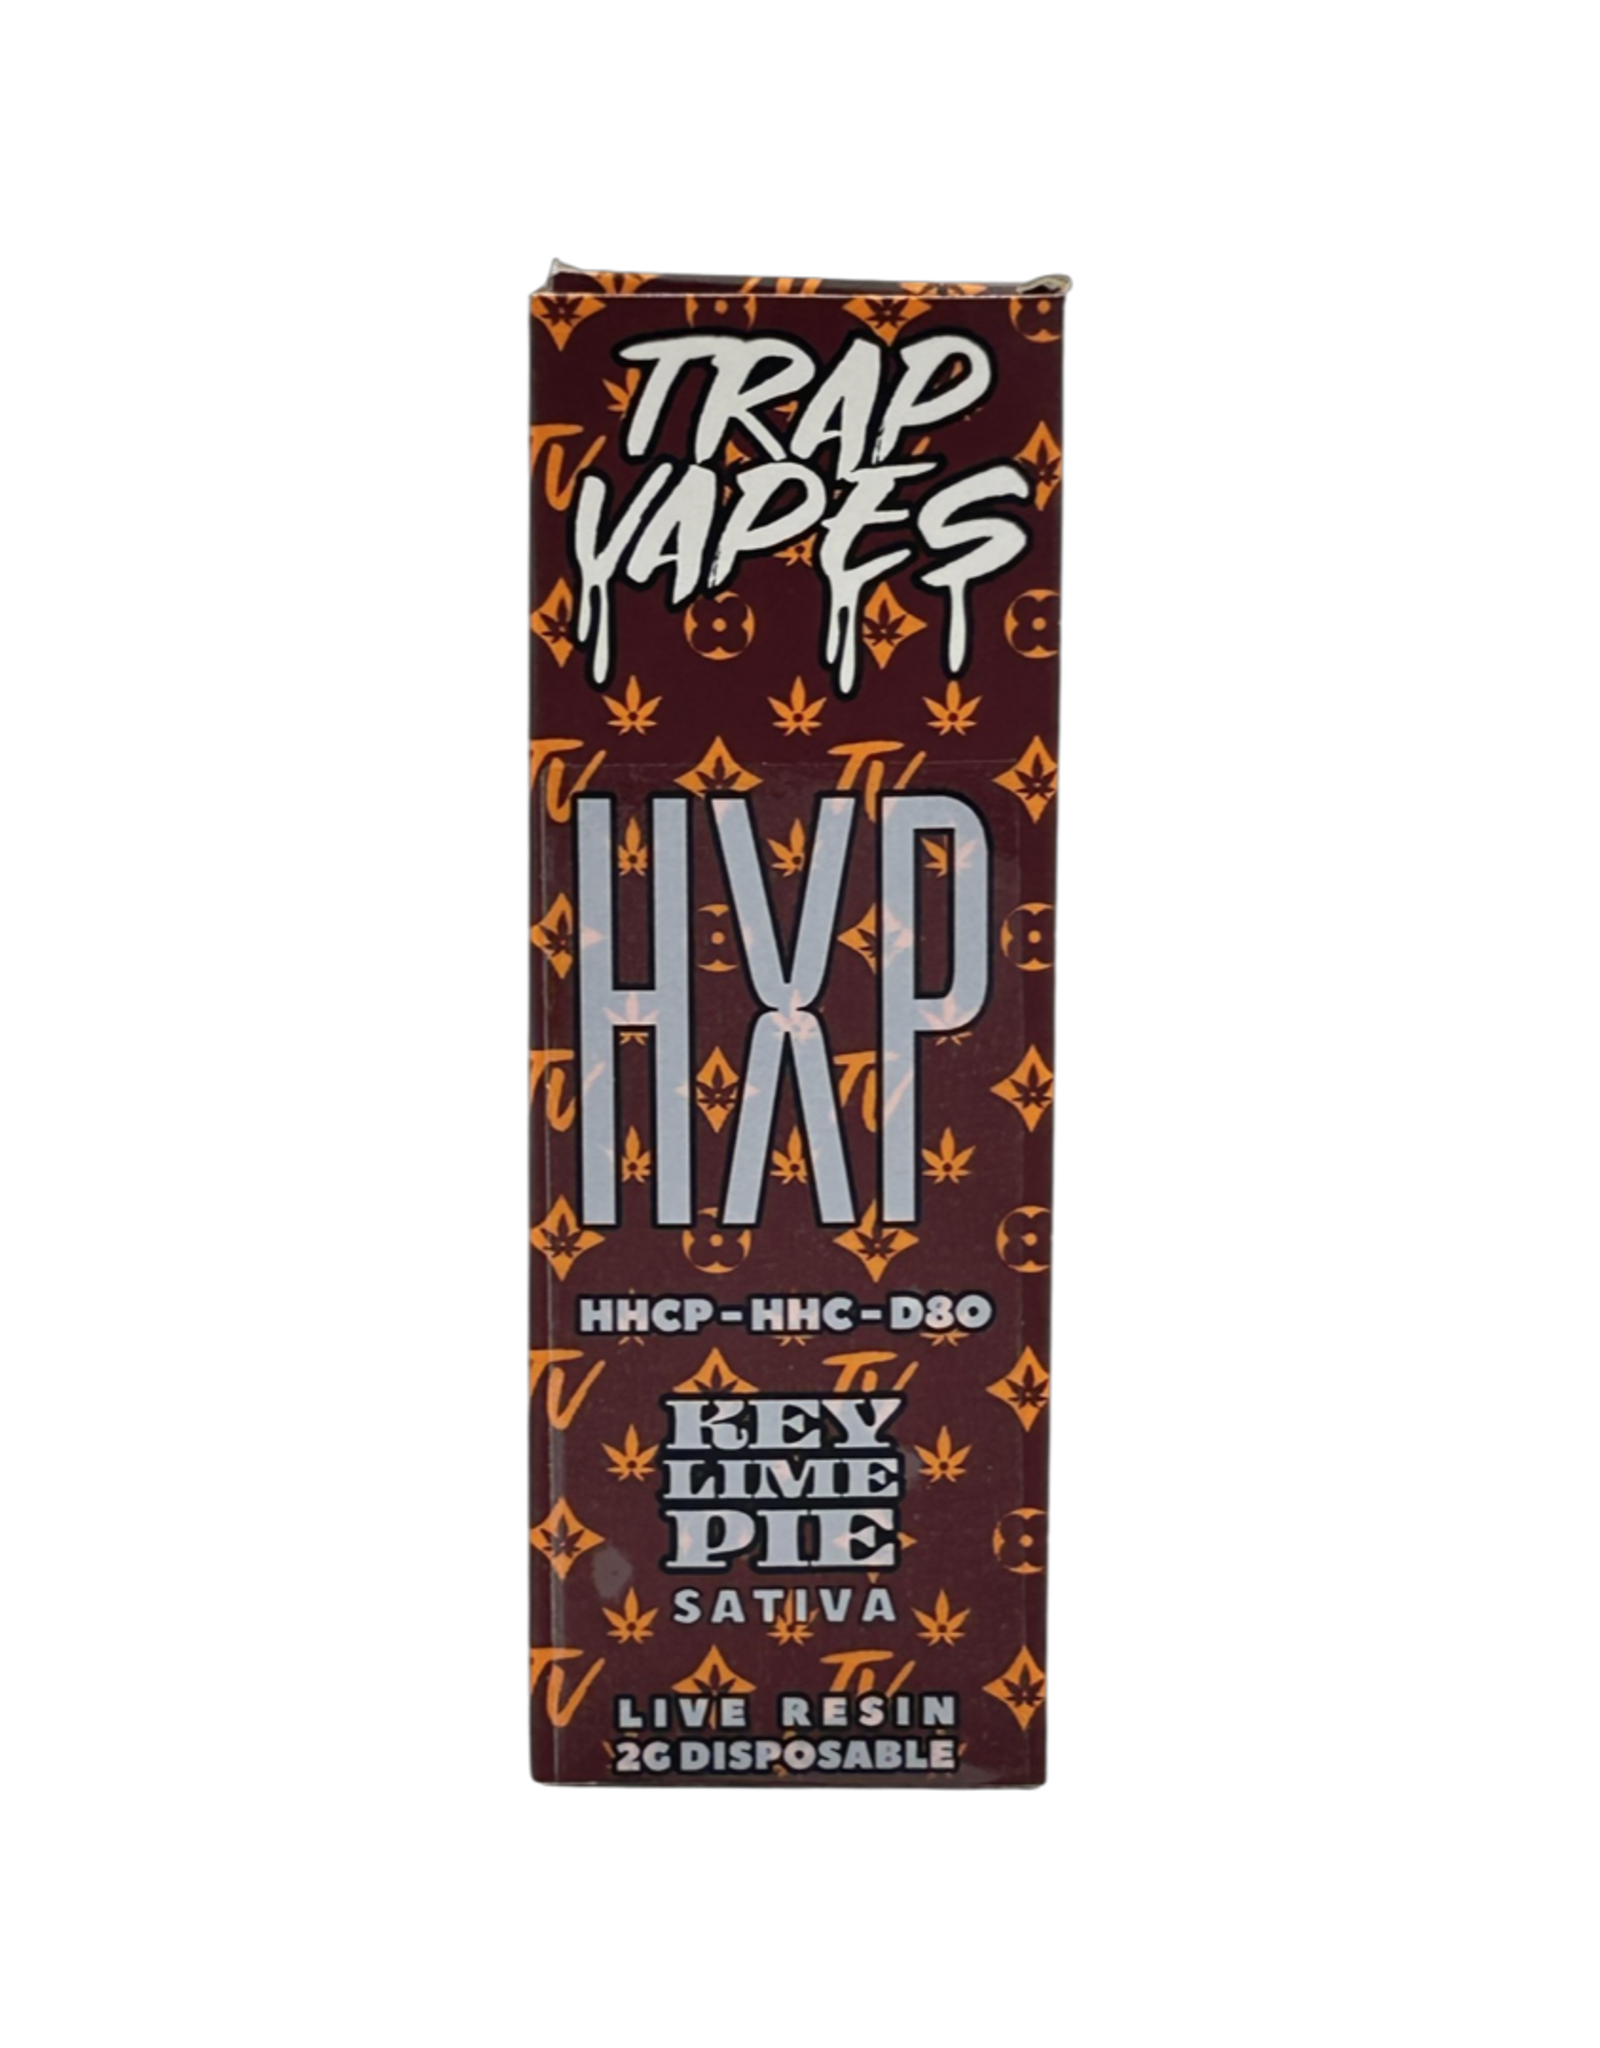 Trap Snax Trap Vapes: HXP Blend - Key Lime Pie 2-gram disposable